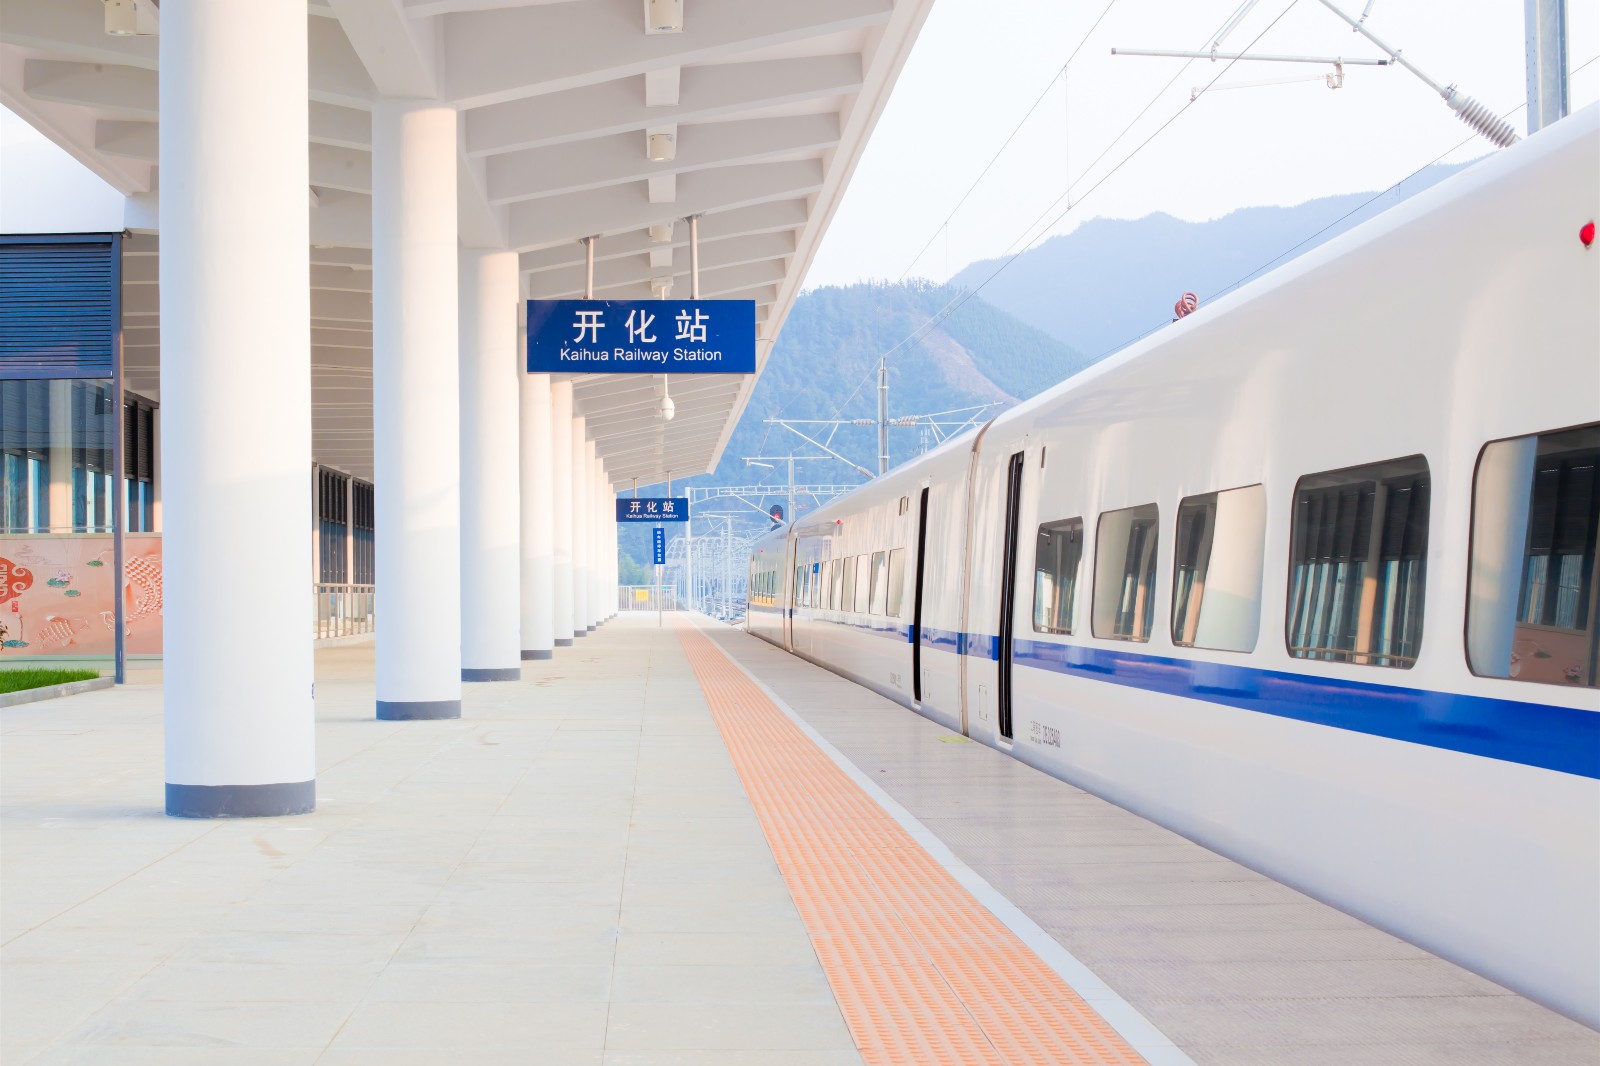 九景衢铁路开通,中铁建设助力开化,常山首迎动车时代